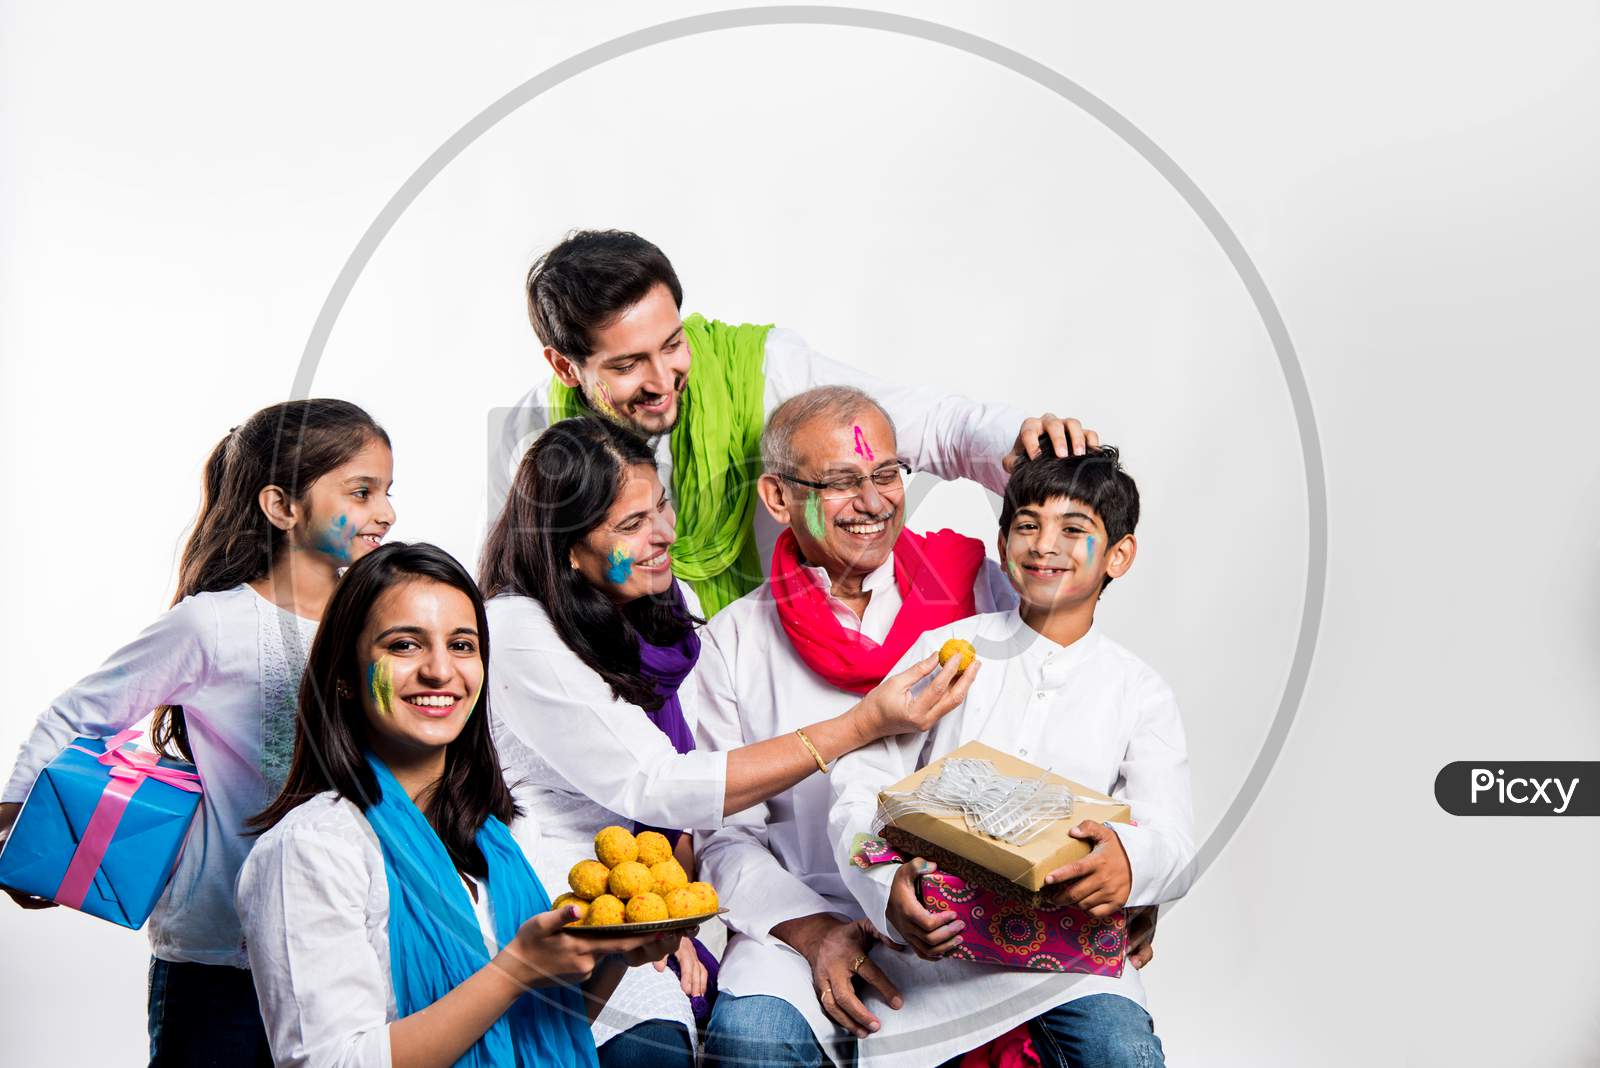 Family eating sweet laddu on Holi festival